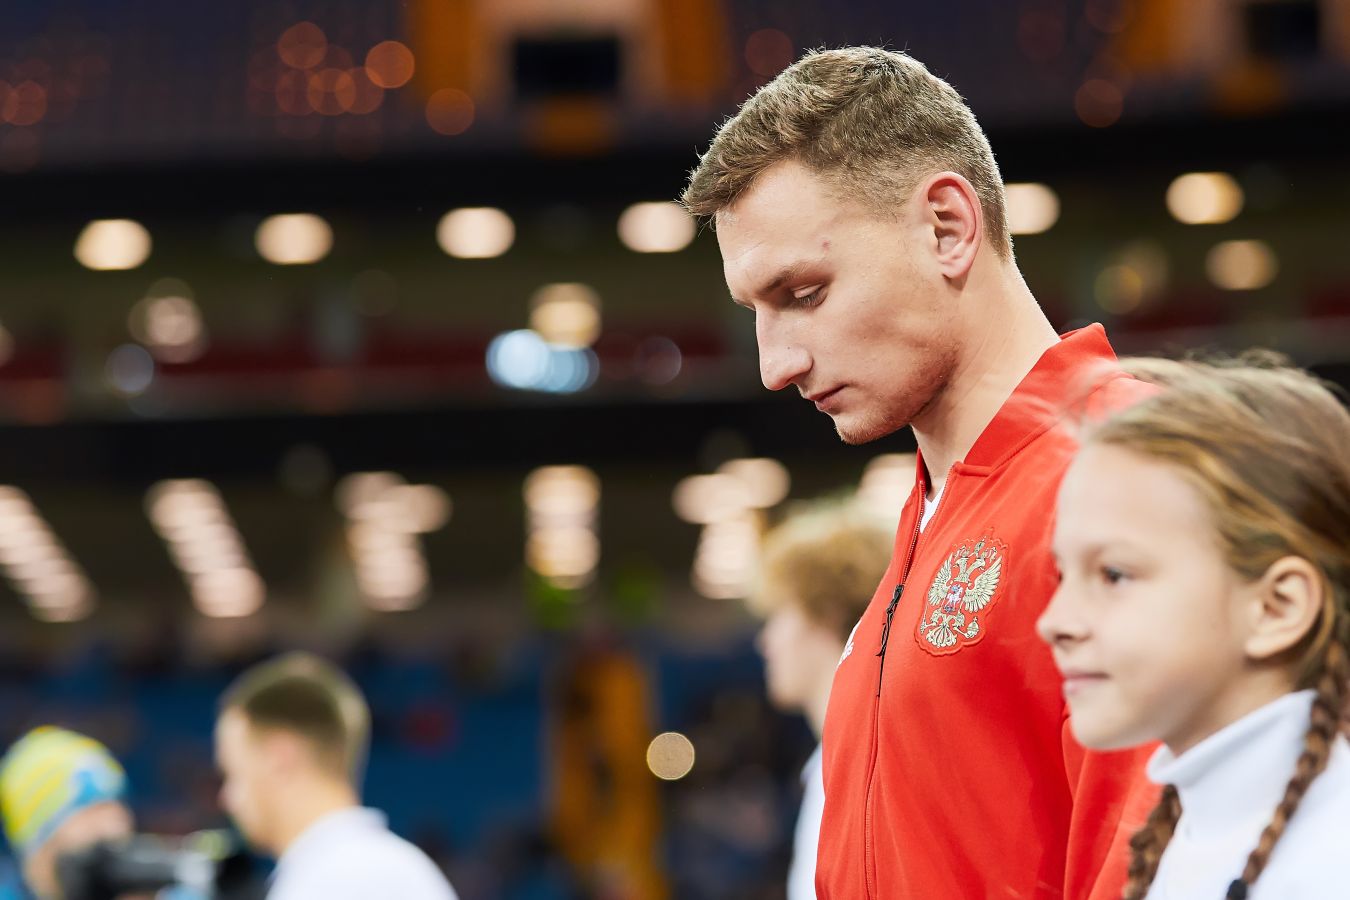 Дмитрий Карсаков высказался об отсутствии Фёдора Чалова в основном составе сборной России